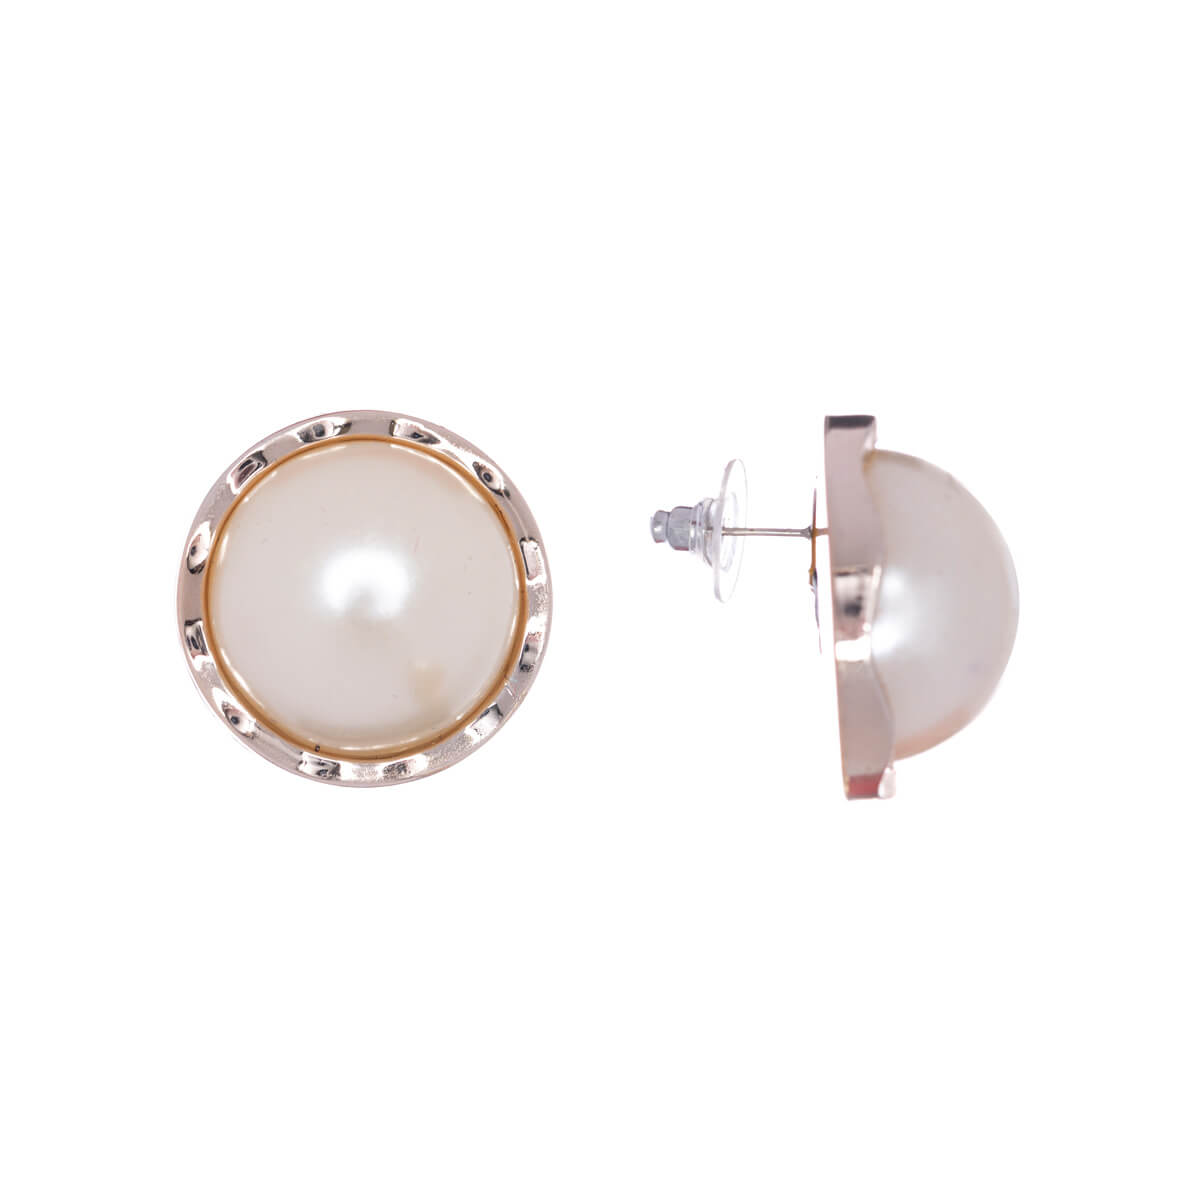 Big round pearl earrings 3cm